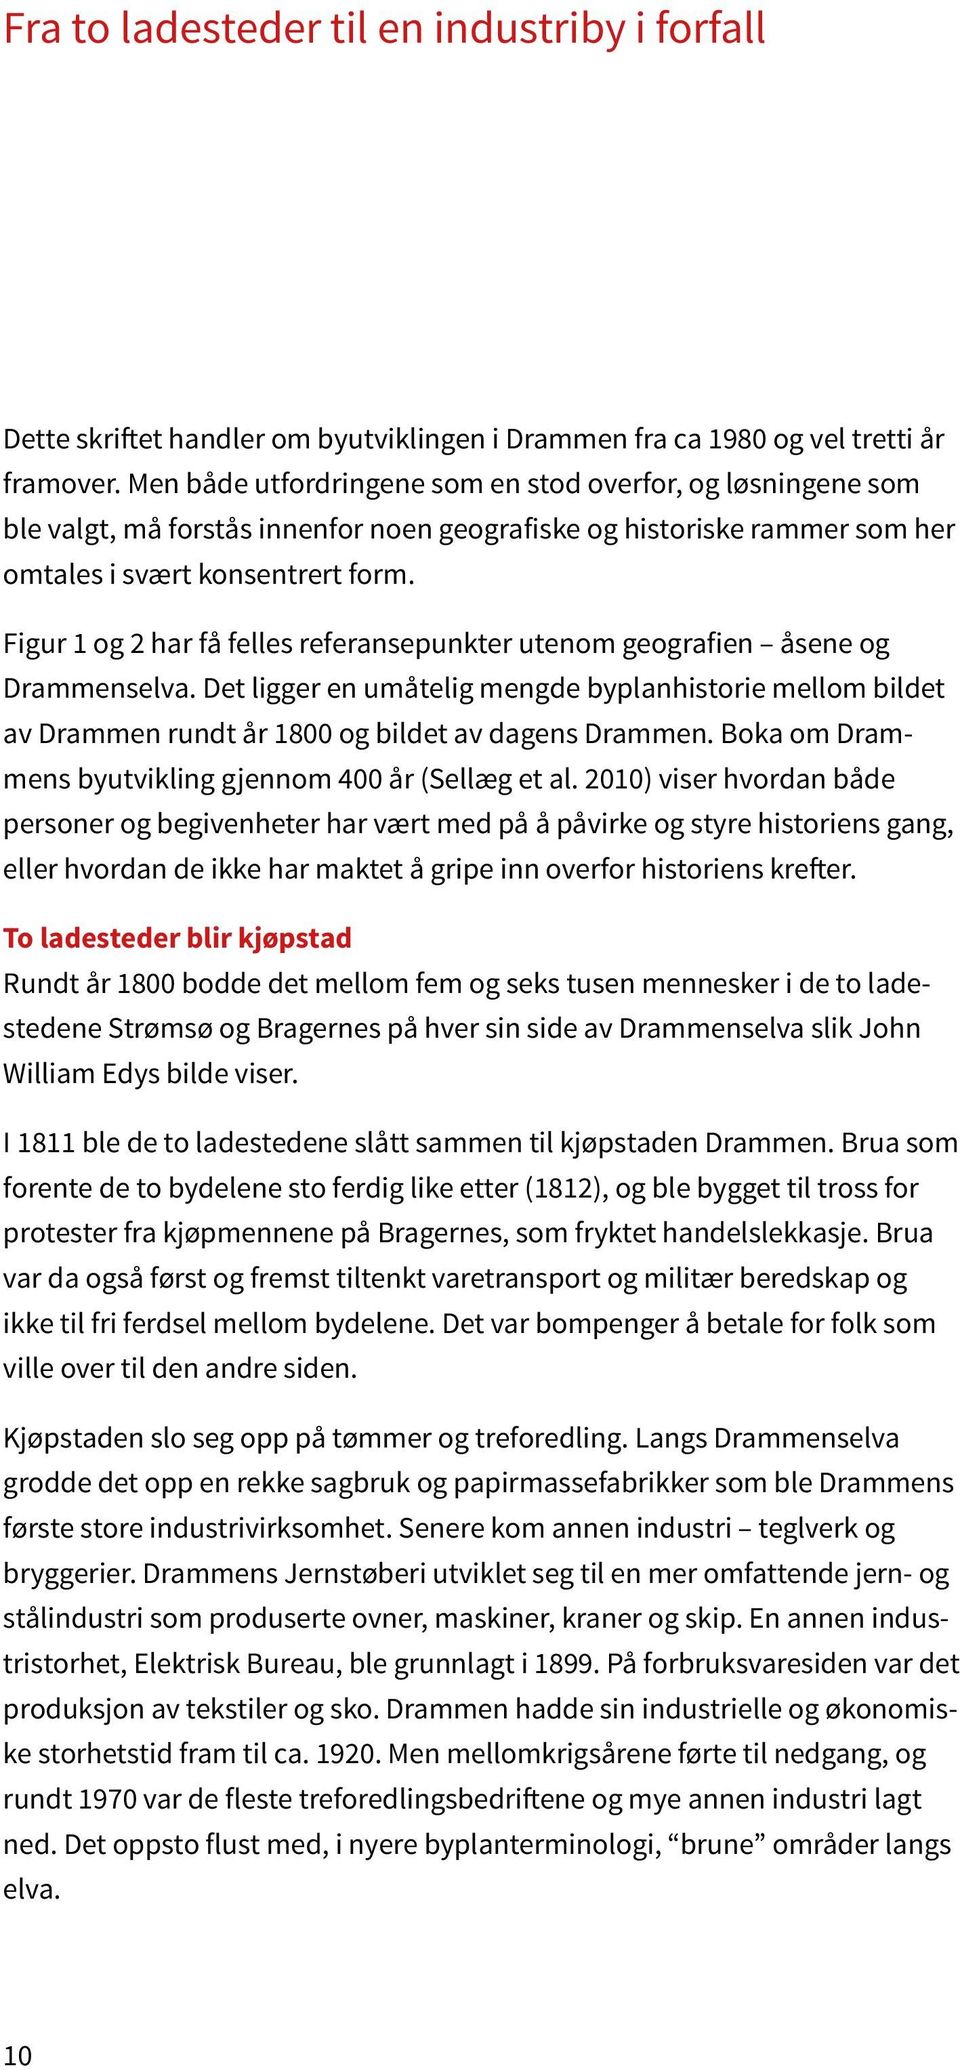 Figur 1 og 2 har få felles referansepunkter utenom geografien åsene og Drammenselva. Det ligger en umåtelig mengde byplanhistorie mellom bildet av Drammen rundt år 1800 og bildet av dagens Drammen.